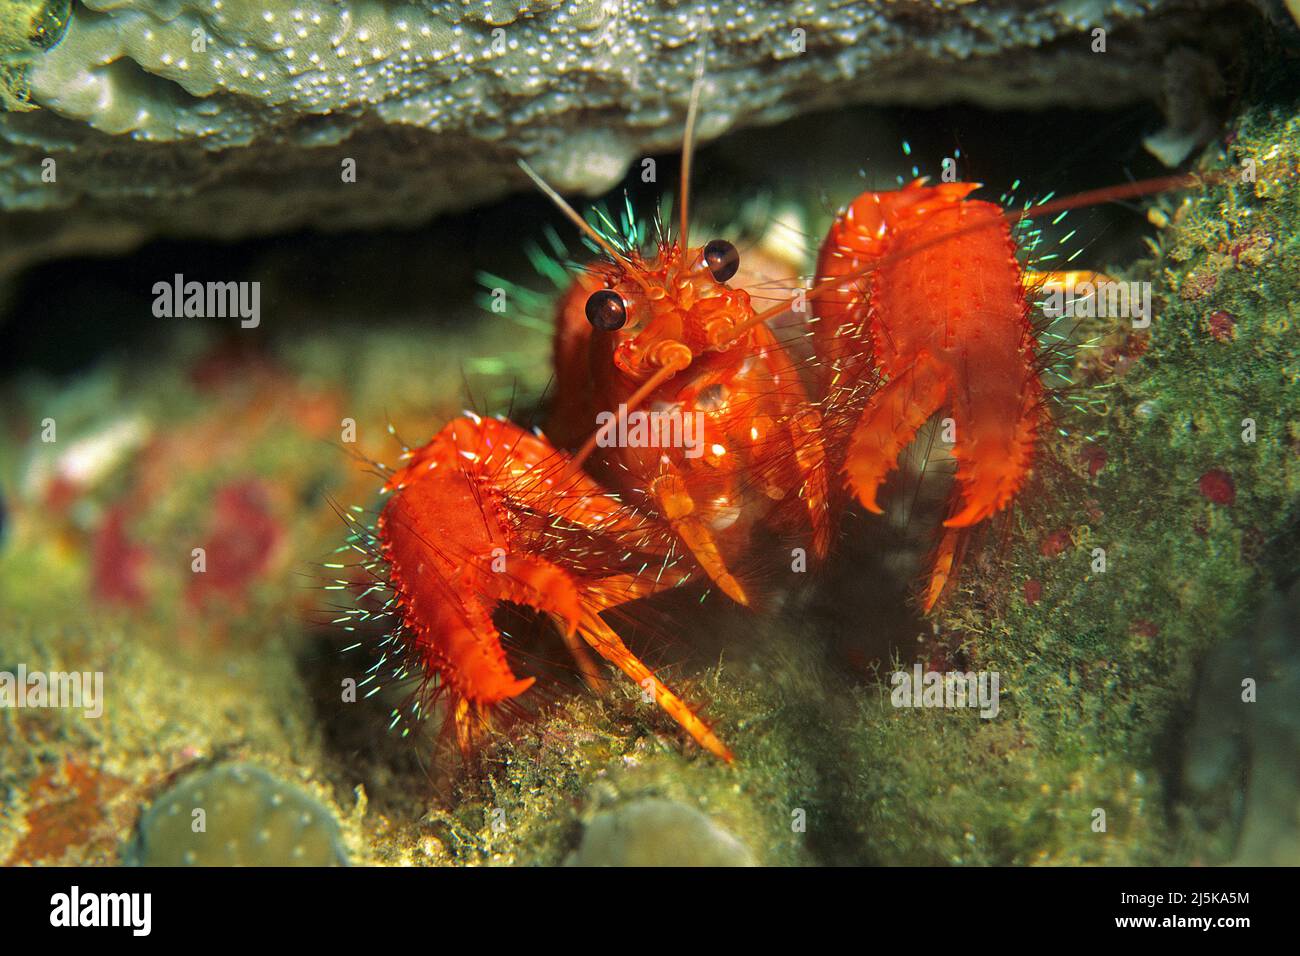 Homard rouge de récif ou homard aili (Enoplometopus occidentalis), la nuit, Maldives, Océan Indien, Asie Banque D'Images